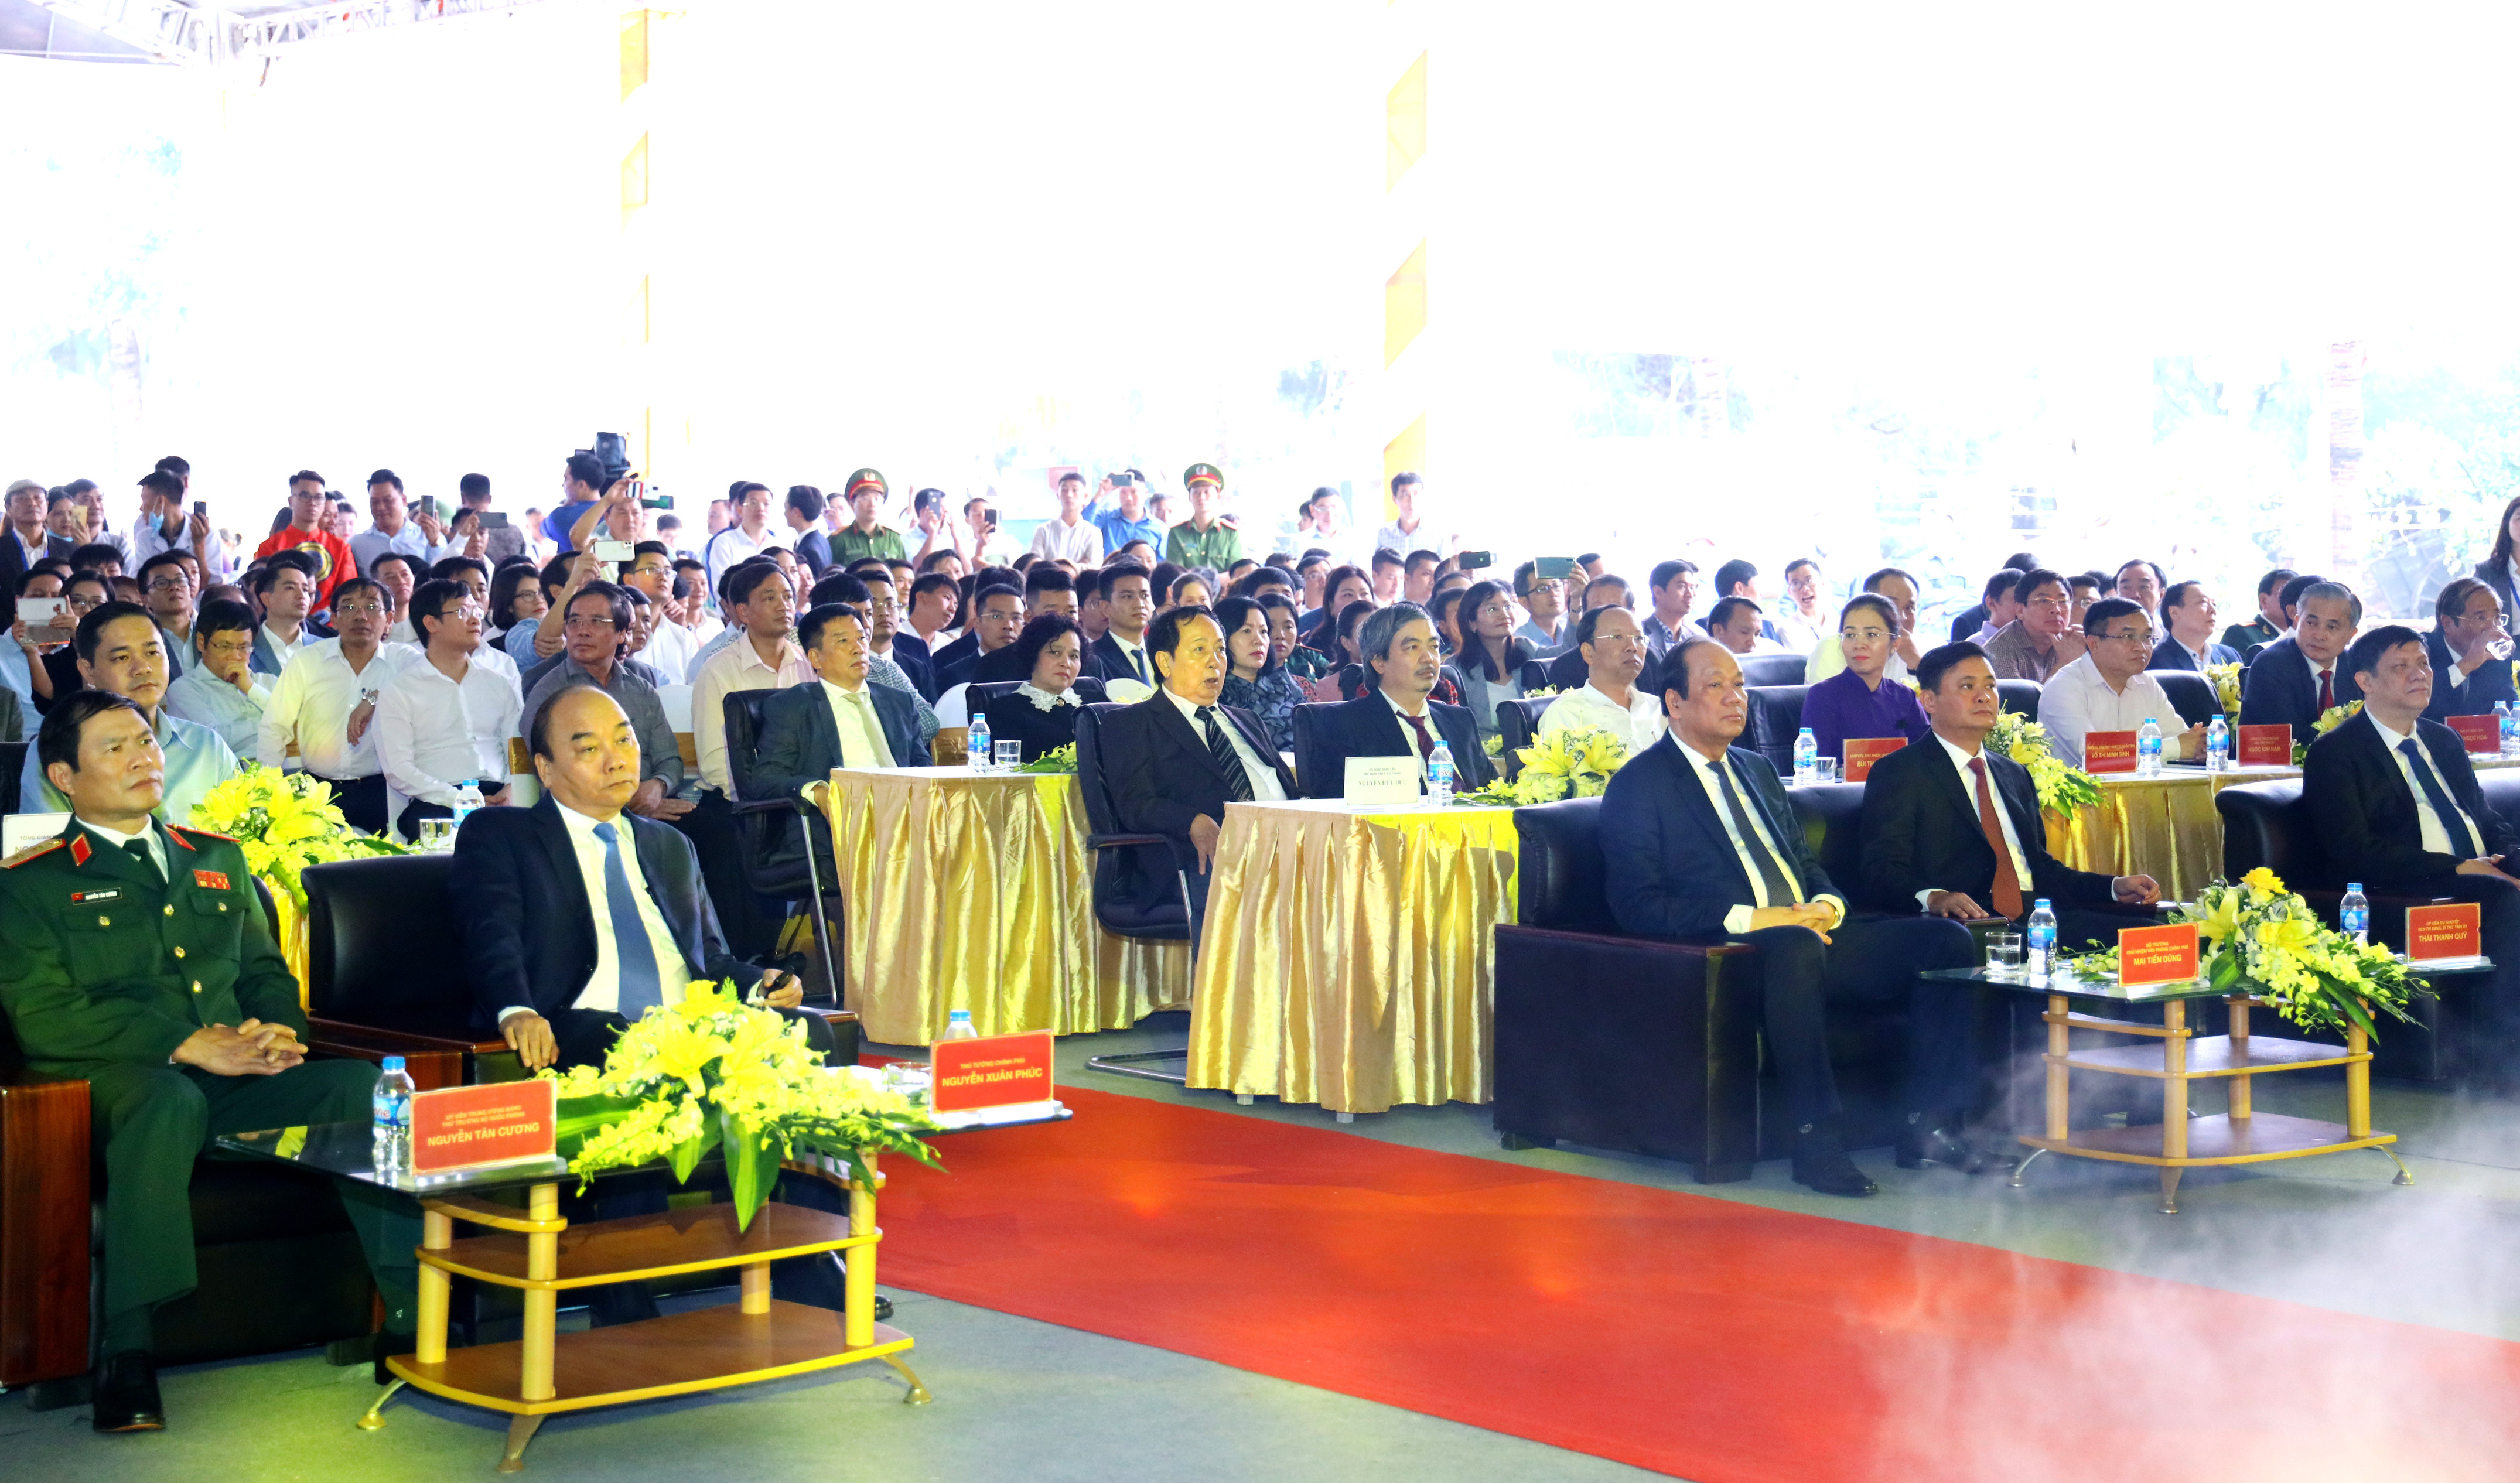 Thru tướng Chính phủ cùng lãnh đạo các Bộ, ngành và tỉnh Nghệ An dự lễ khởi công. Ảnh Nguyên Nguyên